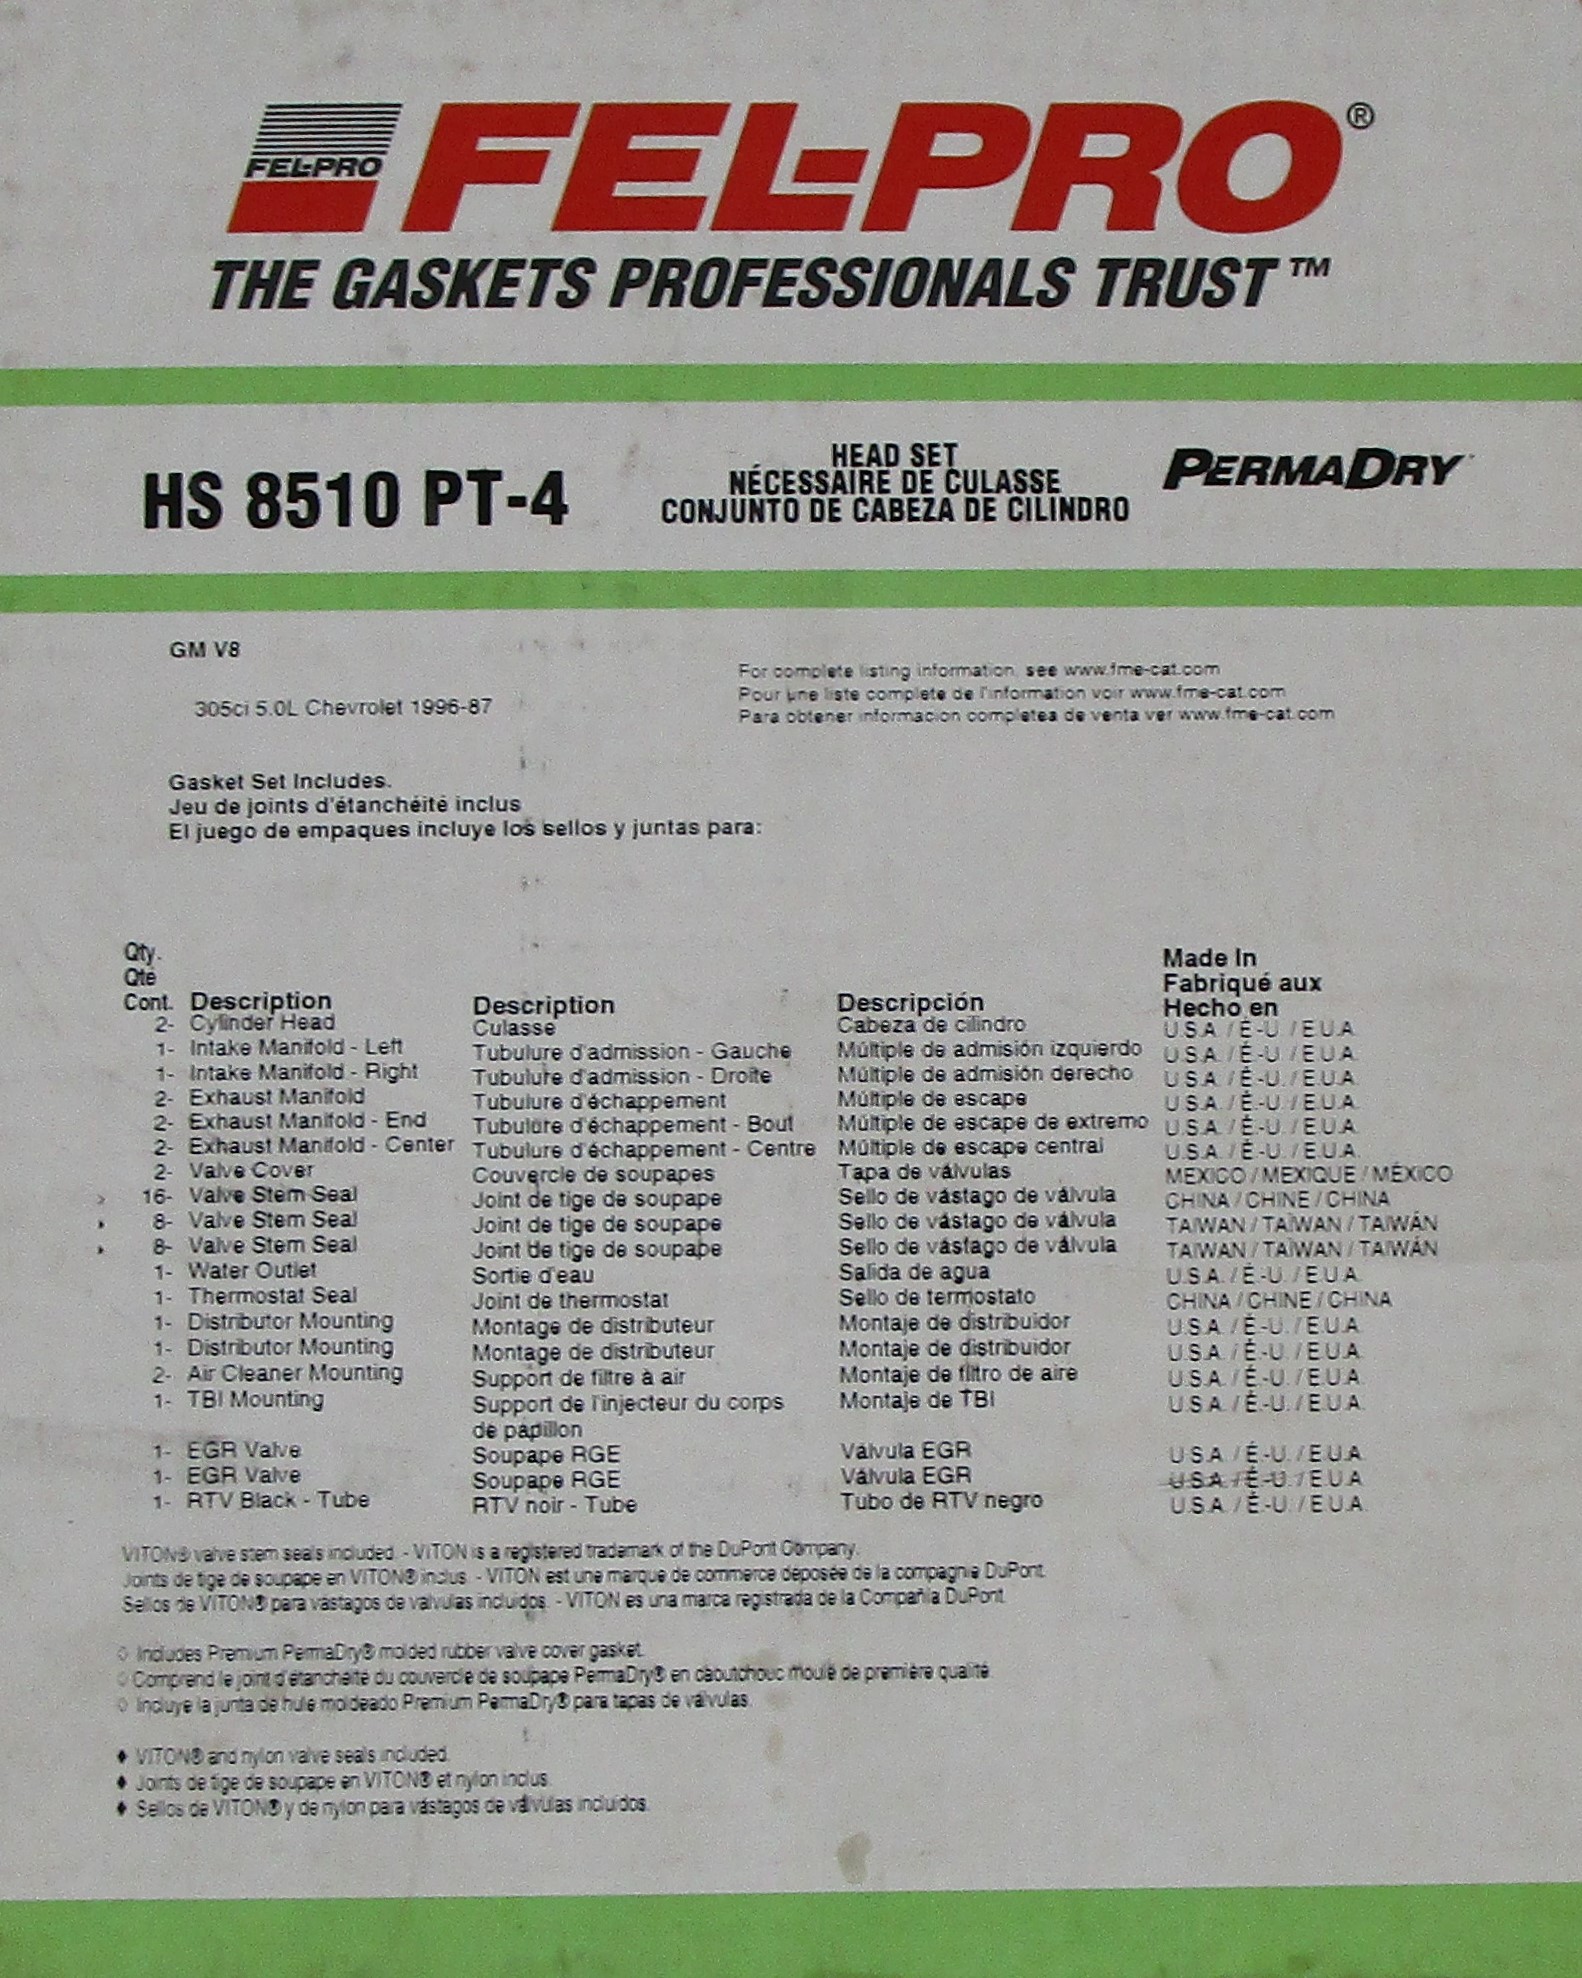 Engine Cyllinder Head Gasket Set Compatible With : 1191 Buick Commerial, 1987 Regal V8, 5.0L / 305 OHV 16 Valves, 1991-1992 Cadillac Brougham V8, 5.0L / 305 OHV 16 Valve, 1988-1992 Chevy Camaro, 1987-1993 Caprice V8 5.0L / 305 OHV 16 Valve